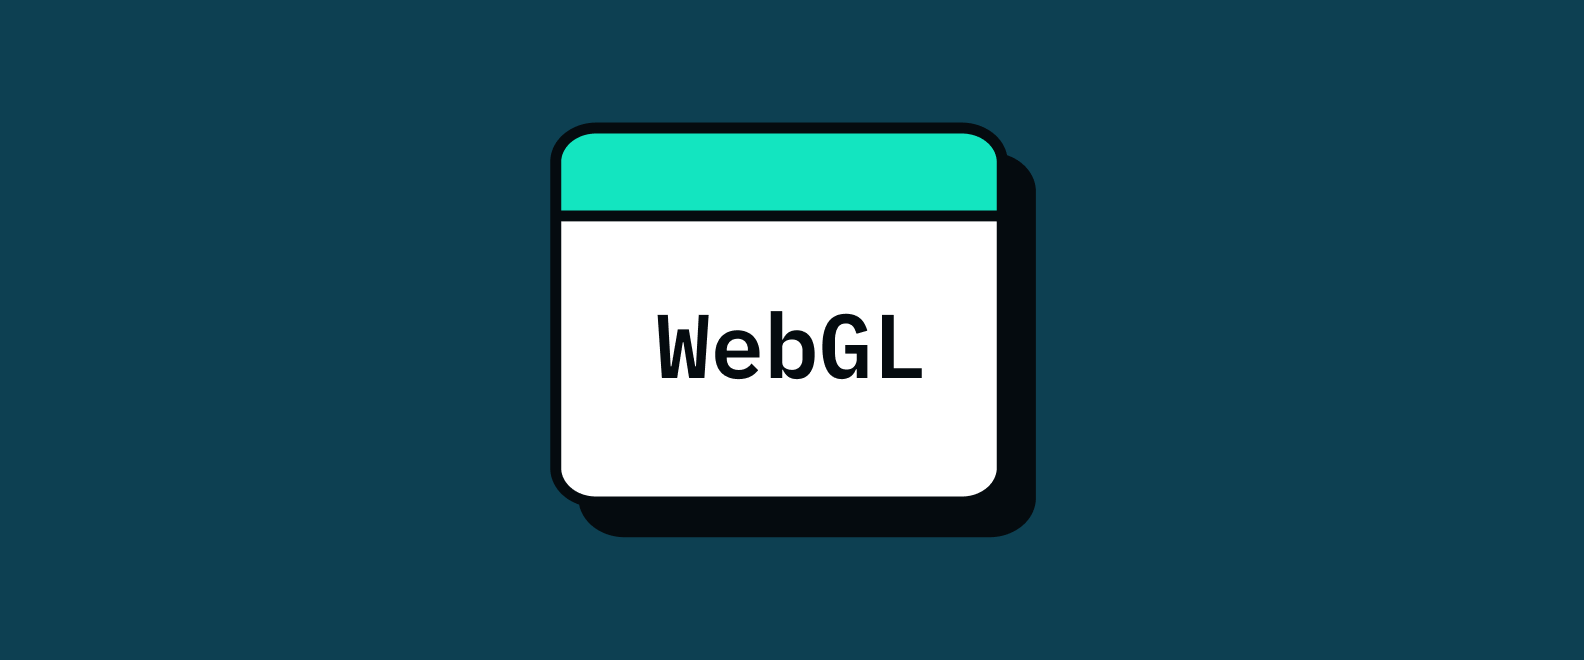 A depiction of a screen that says "WebGL"